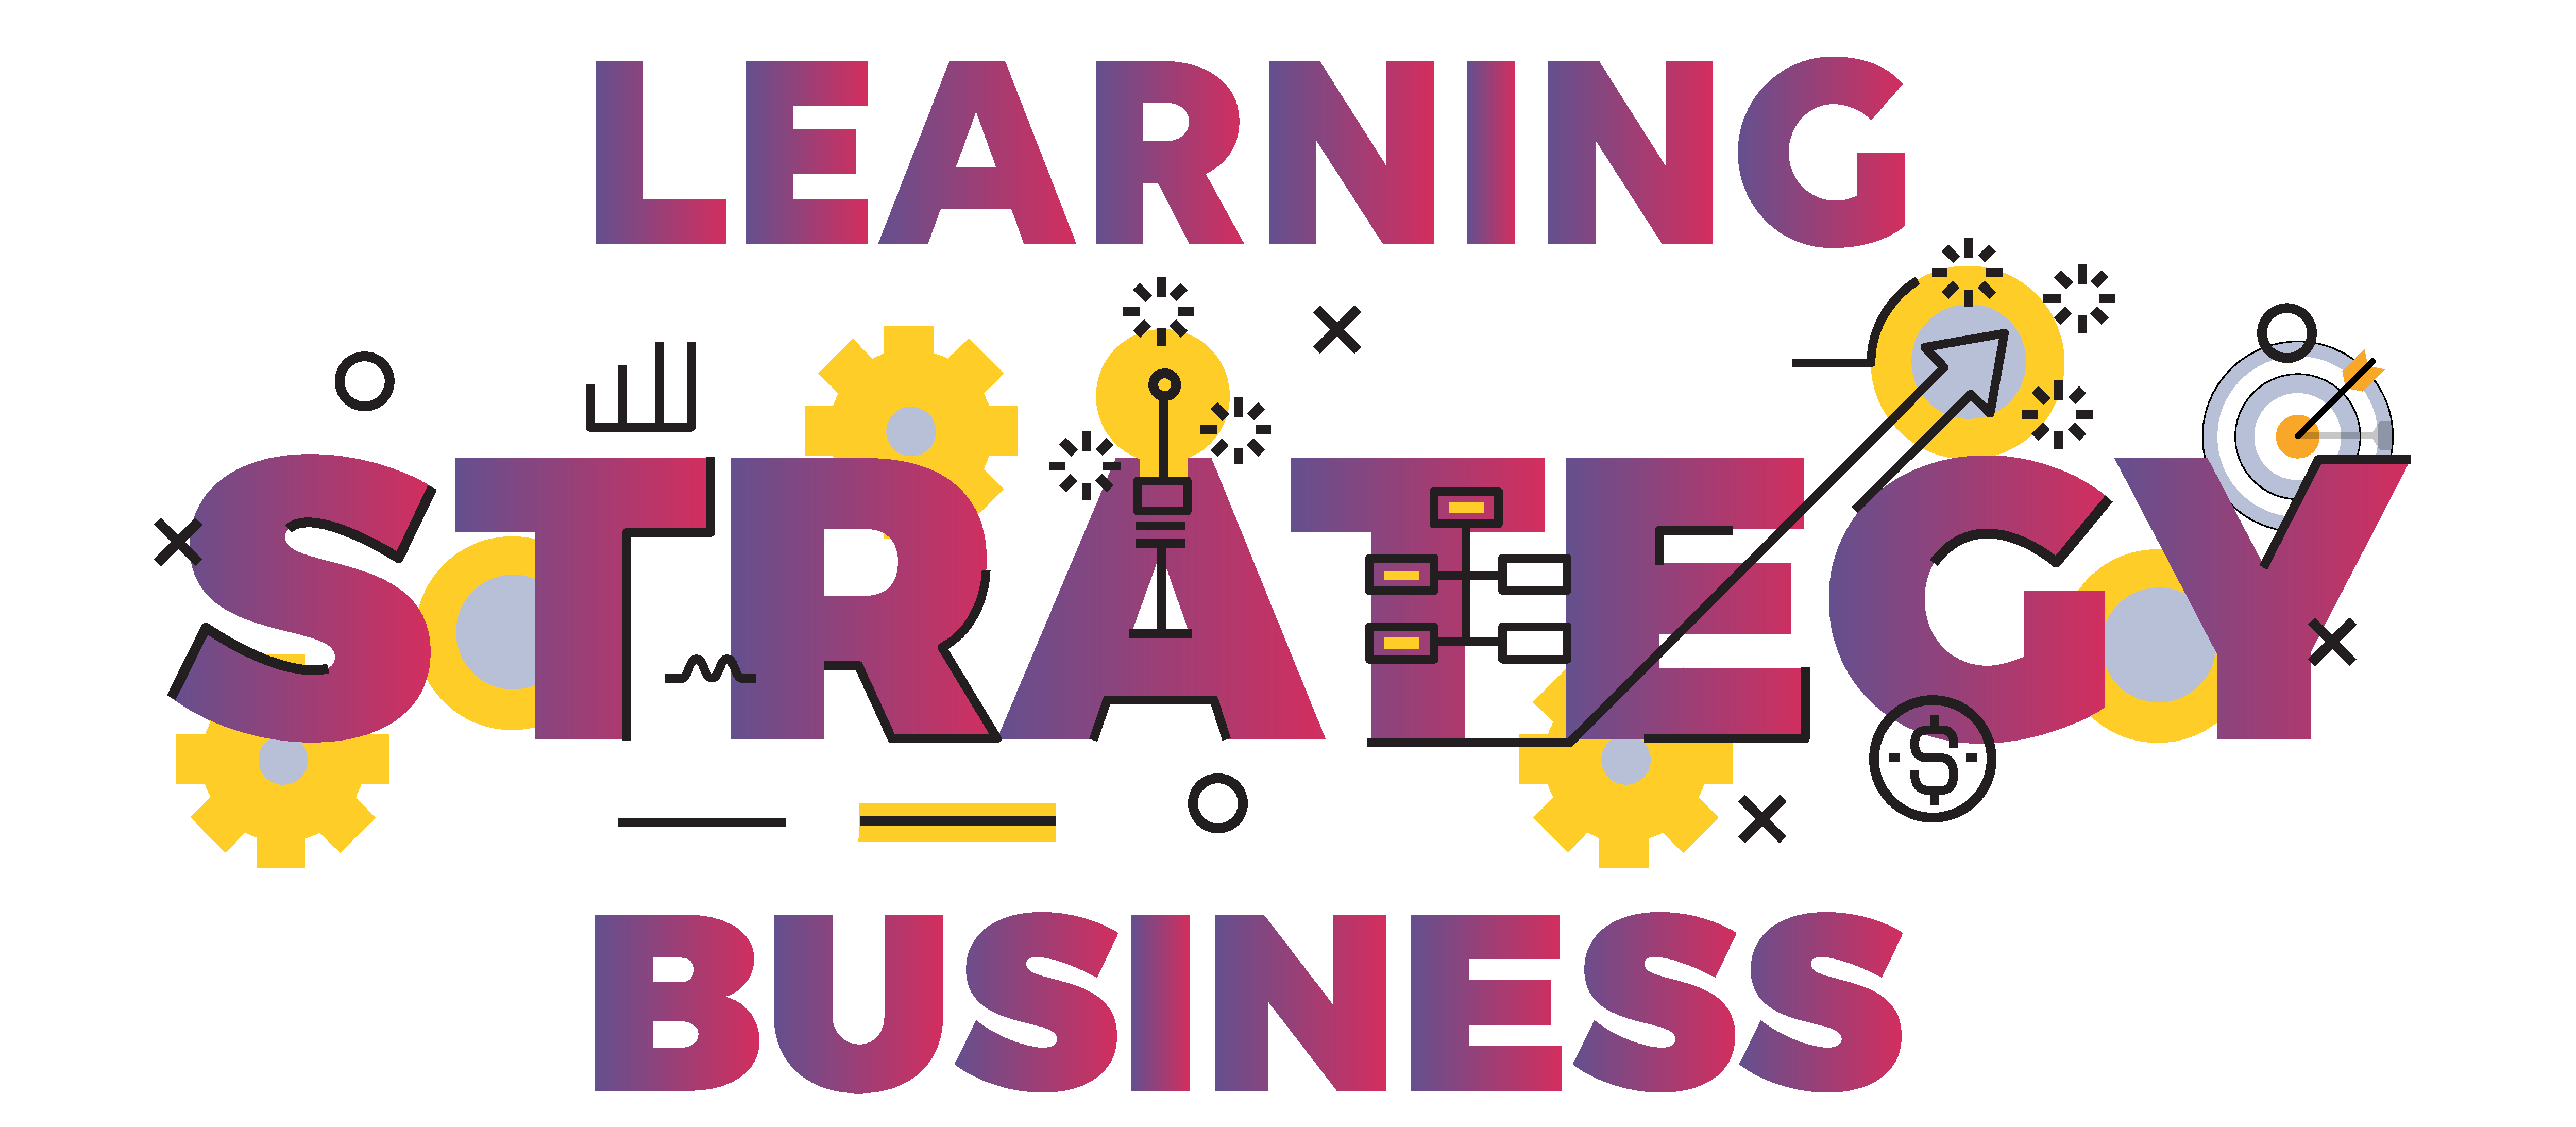 quelle stratégie de learning pour un réel impact business